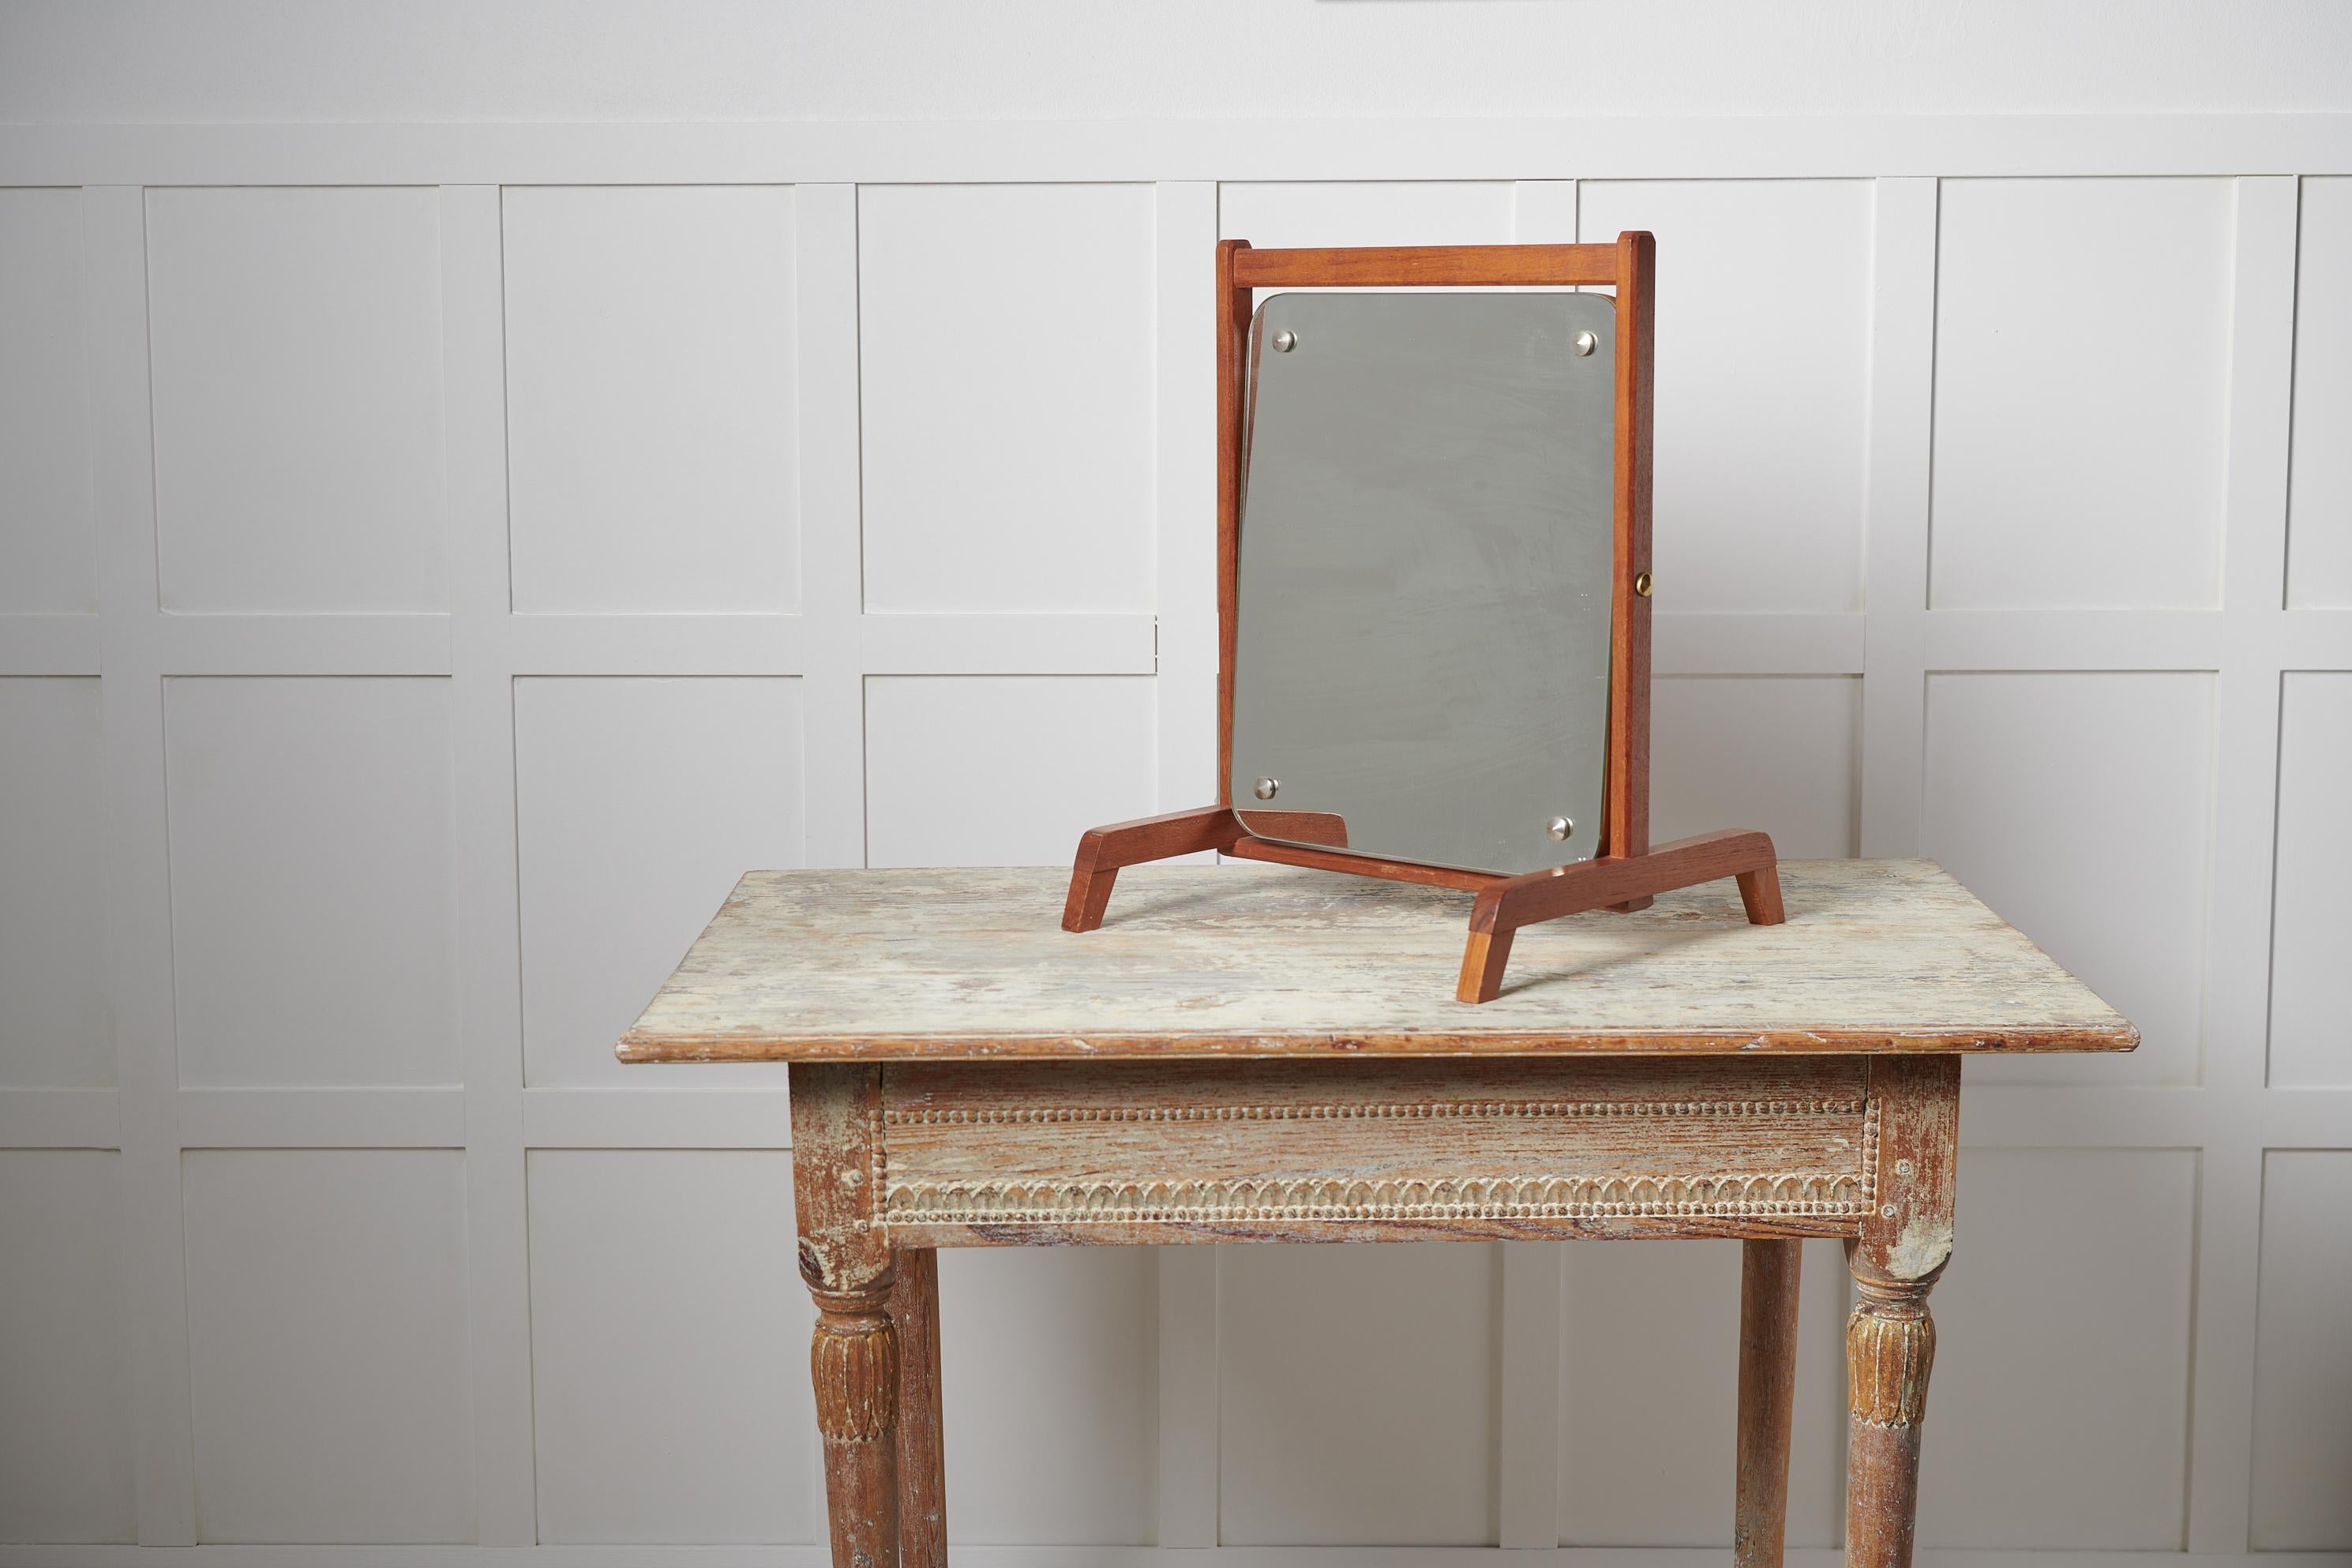 Vintage Tischspiegel aus Teakholz aus Schweden. Der Spiegel stammt aus den 1960er Jahren und ist ein zeitloser Einrichtungsgegenstand mit viel Retro-Charme. Der Rahmen ist aus Teakholz und der Spiegel ist einschließlich der Beine 35 cm tief.